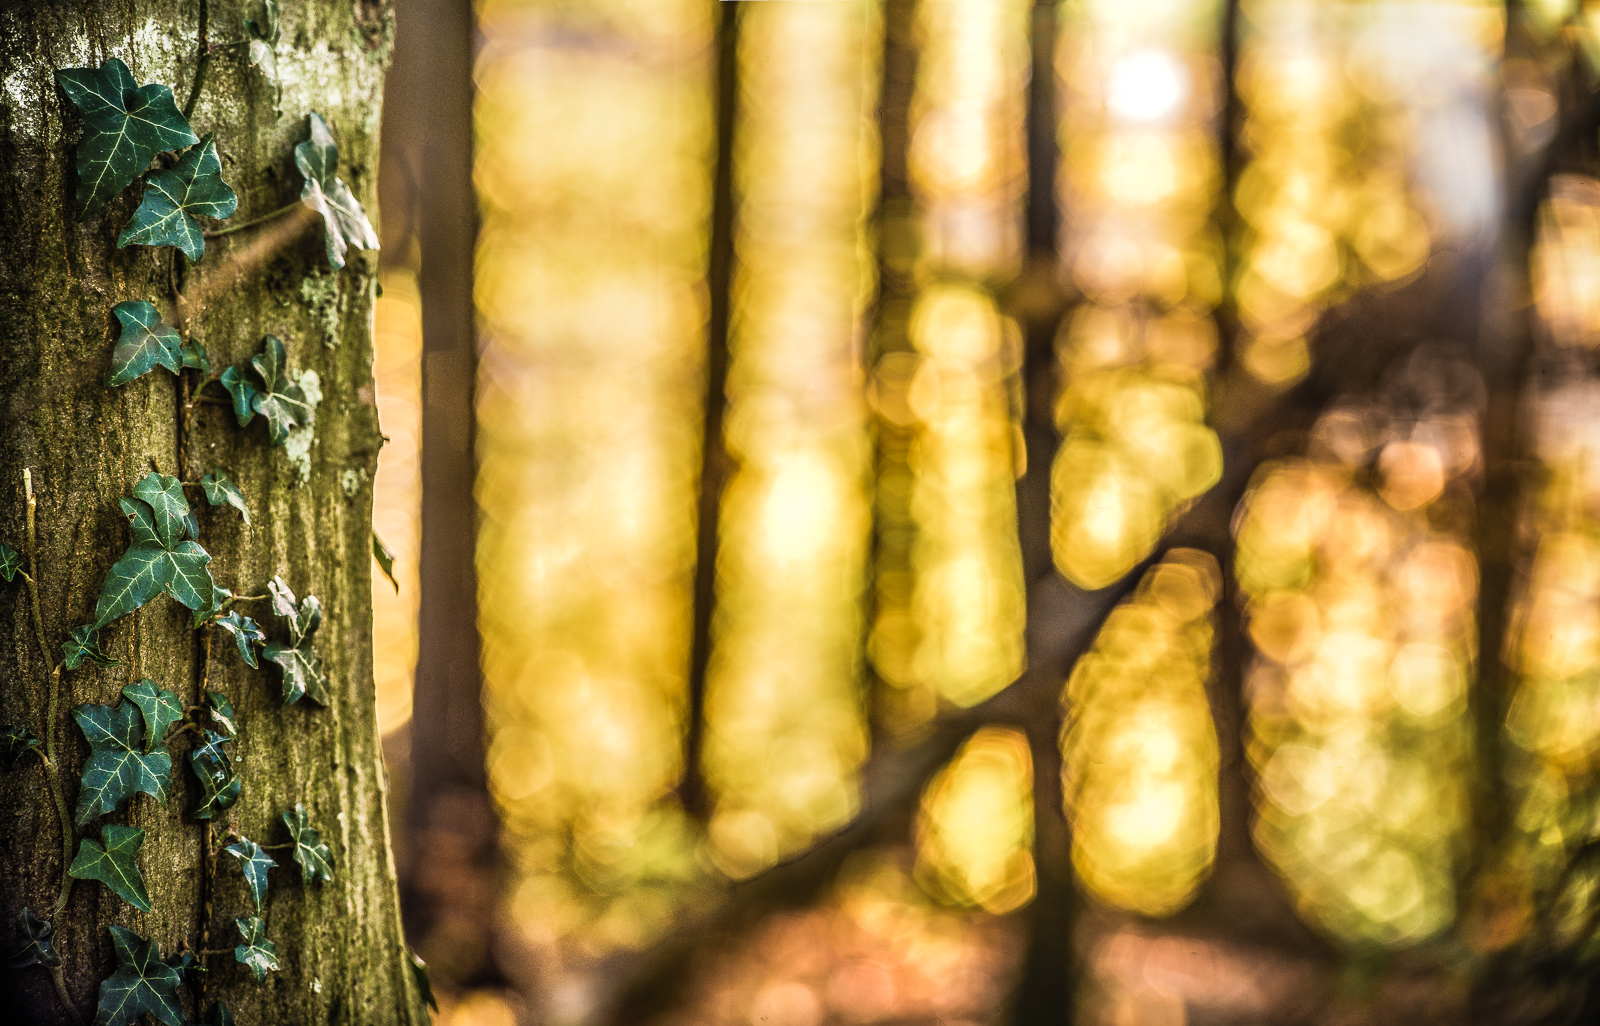 Am linken Bildrand ein mit Efeu berankter Baumstamm in engem Ausschnitt. Hinten in starker Unschärfe sechs aufrecht stehende und ein gekippter Baumstamm, zwischen denen intensiv goldenes Licht hindurchstrahlt.